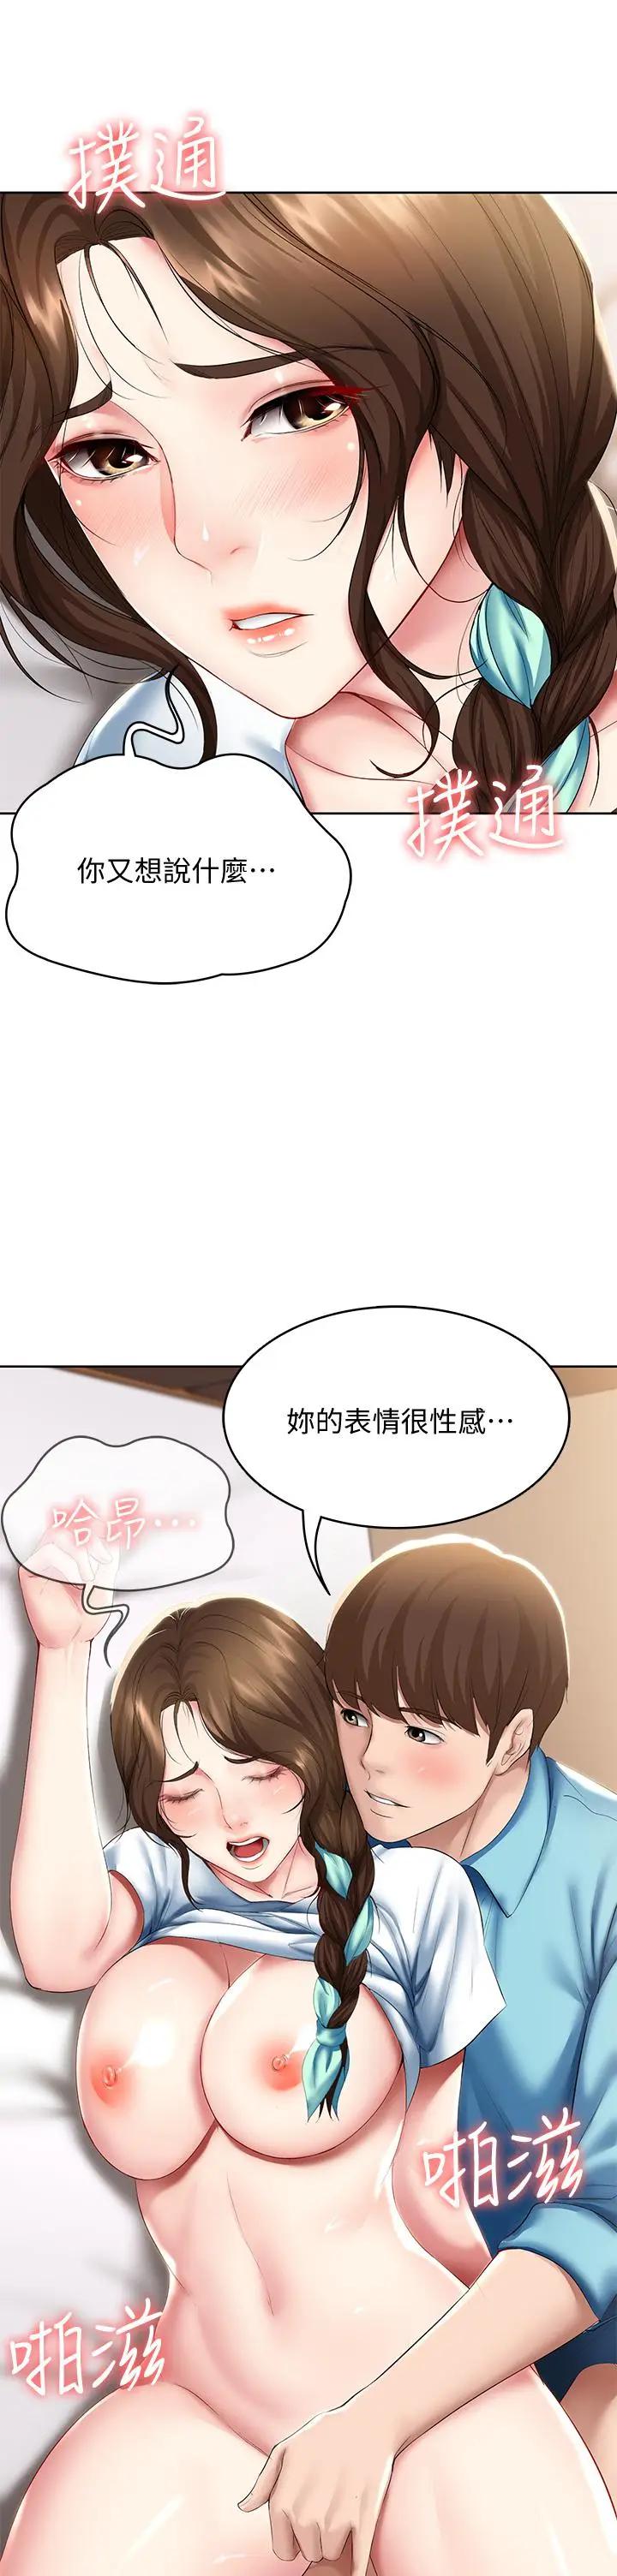 韩国污漫画 寄宿日記 第56话妖艳美静的特别服务 35